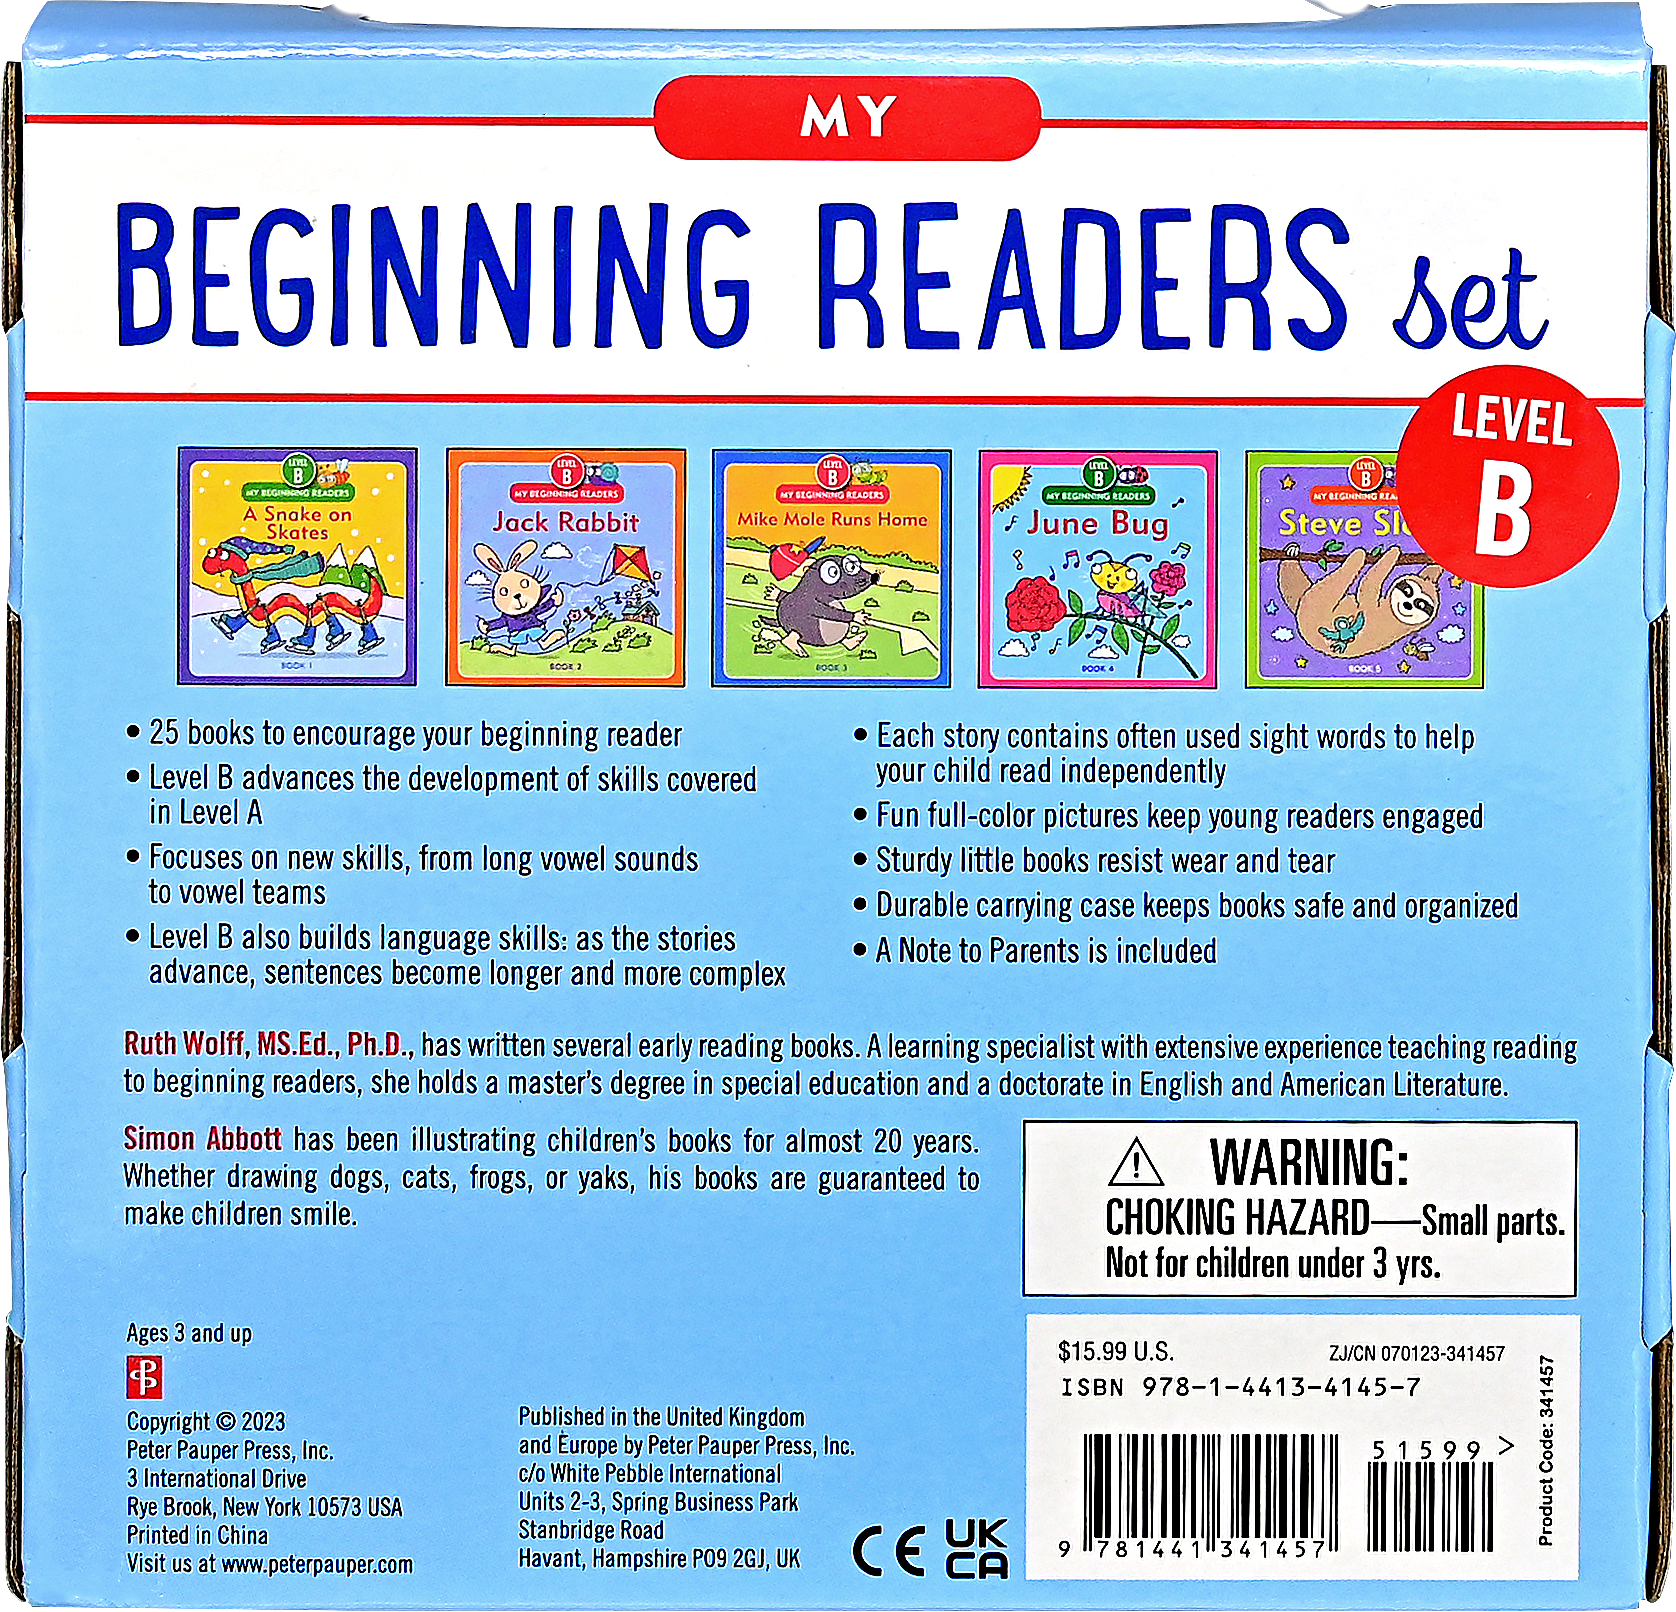 Peter Pauper Press - My Beginning Readers Set: Level B